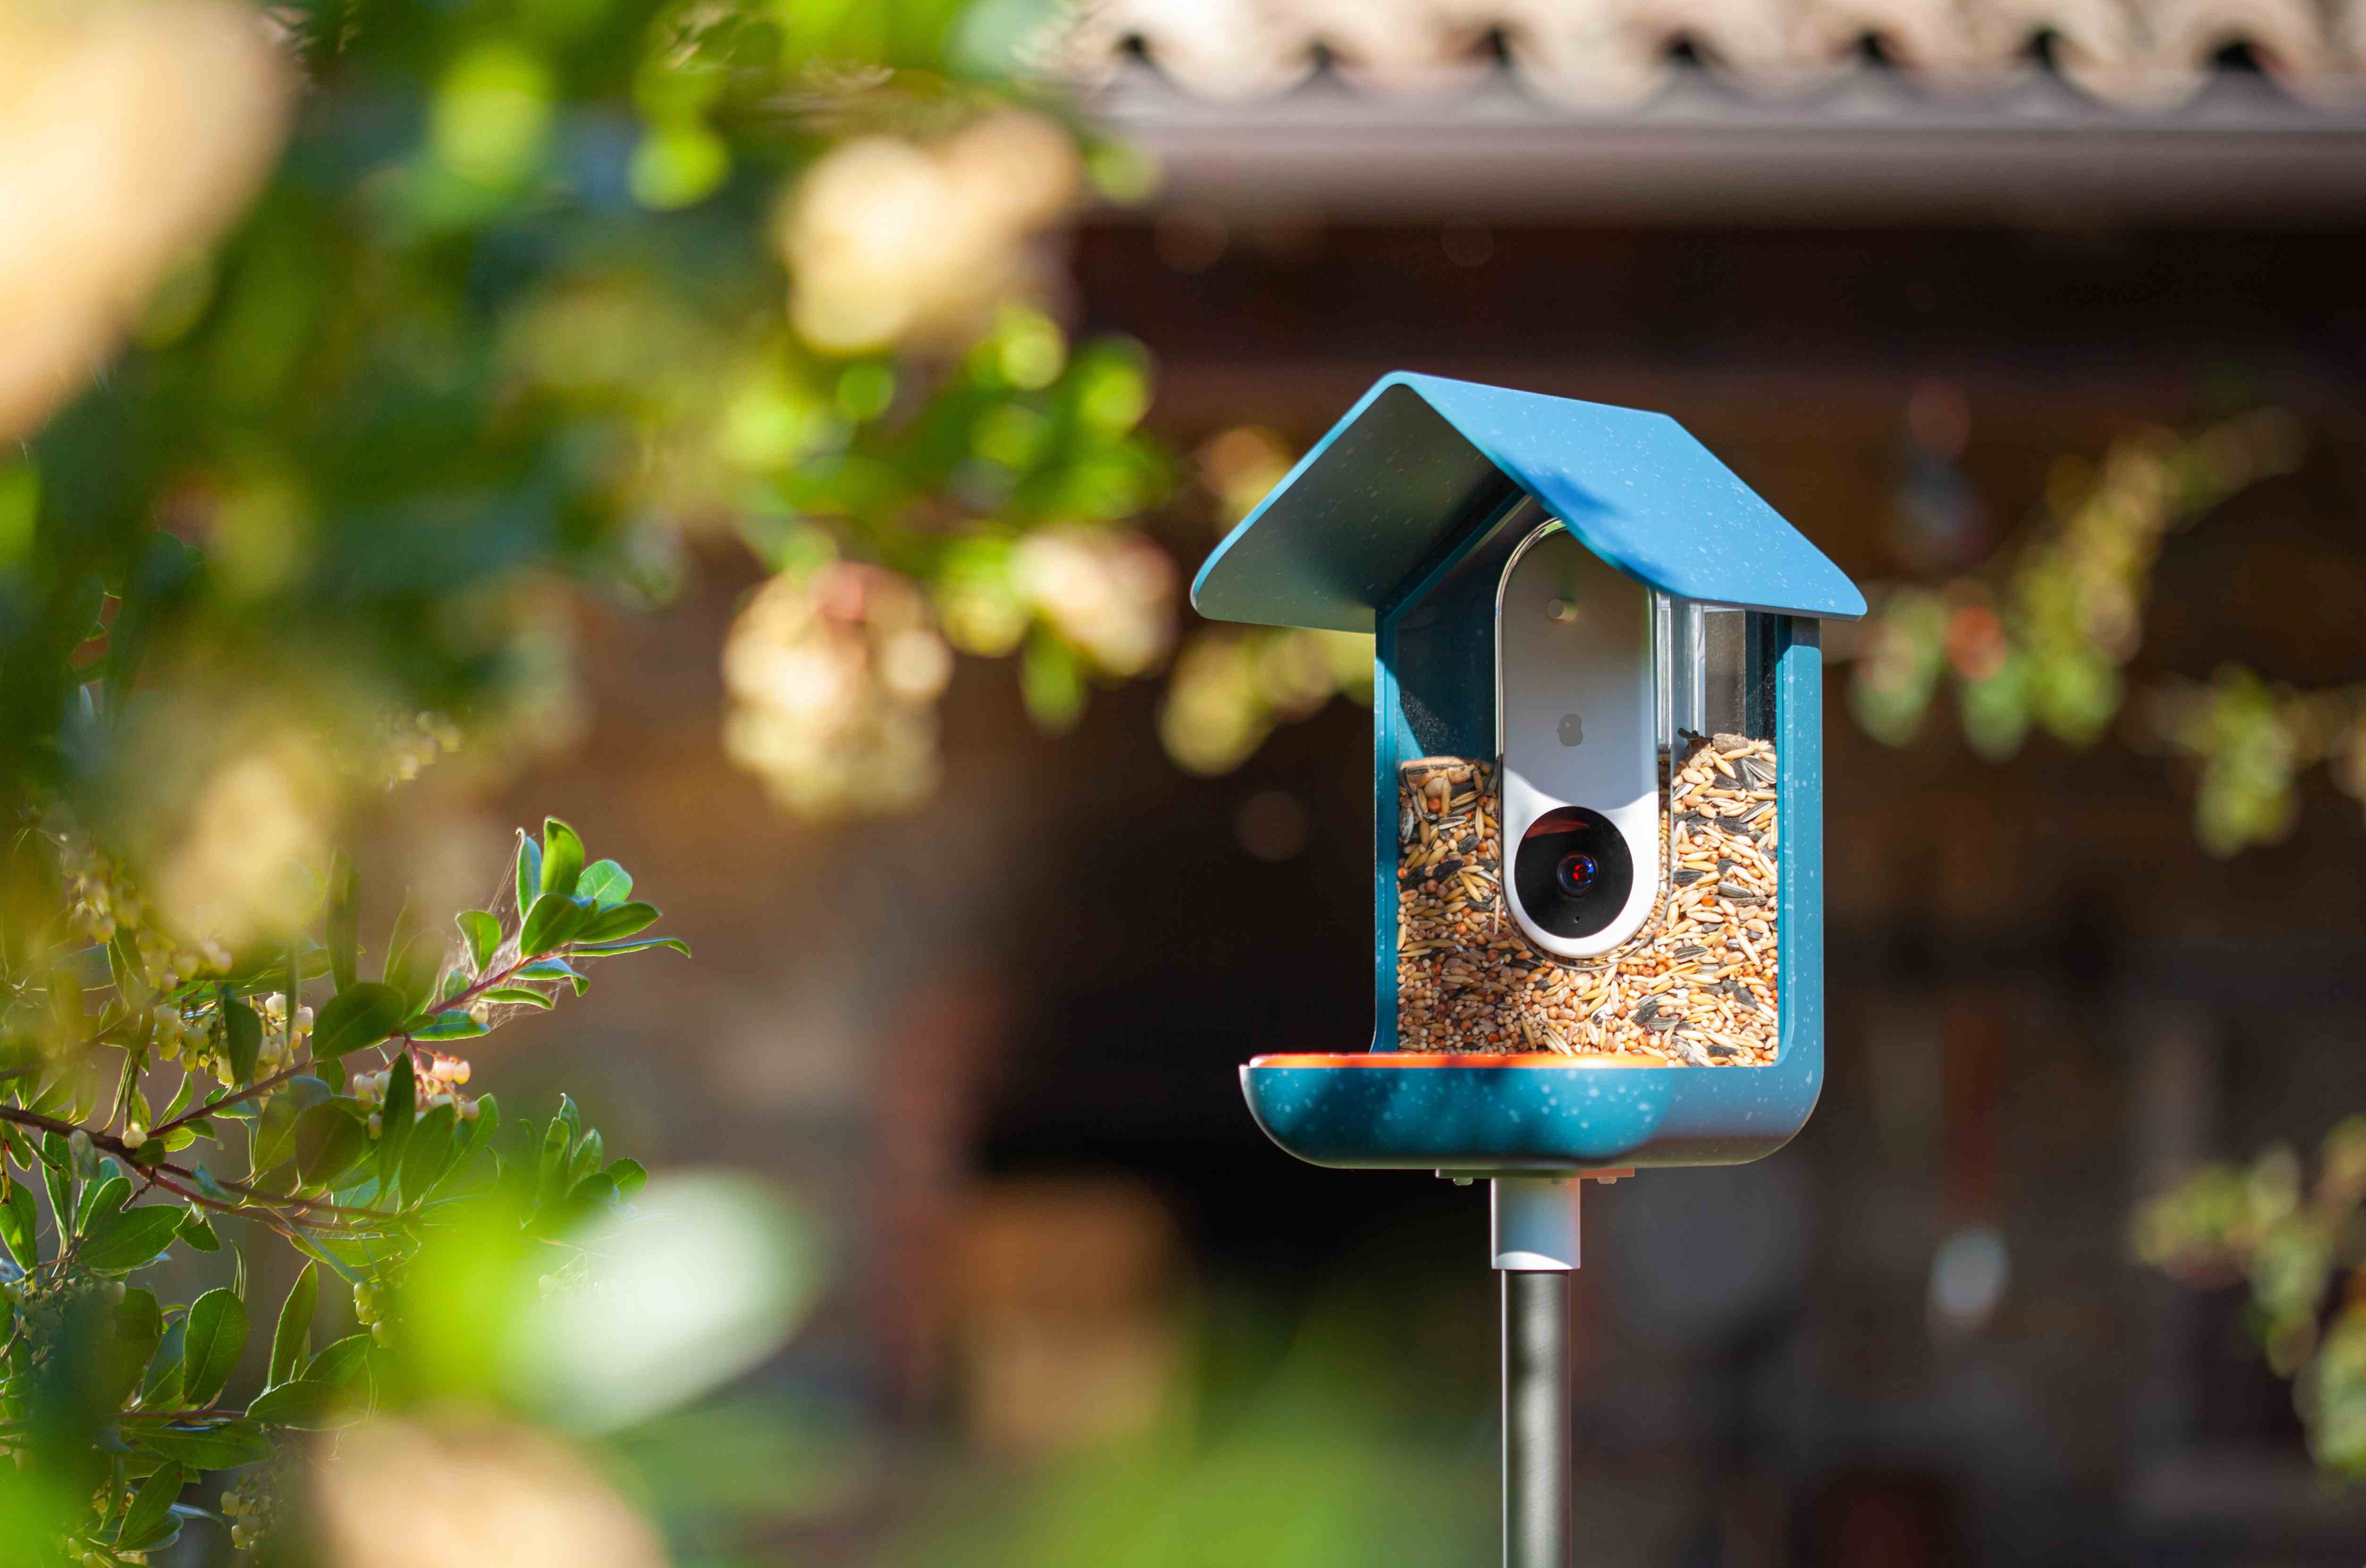 Image de la mangeoire à oiseaux dans un jardin ensoleillé.